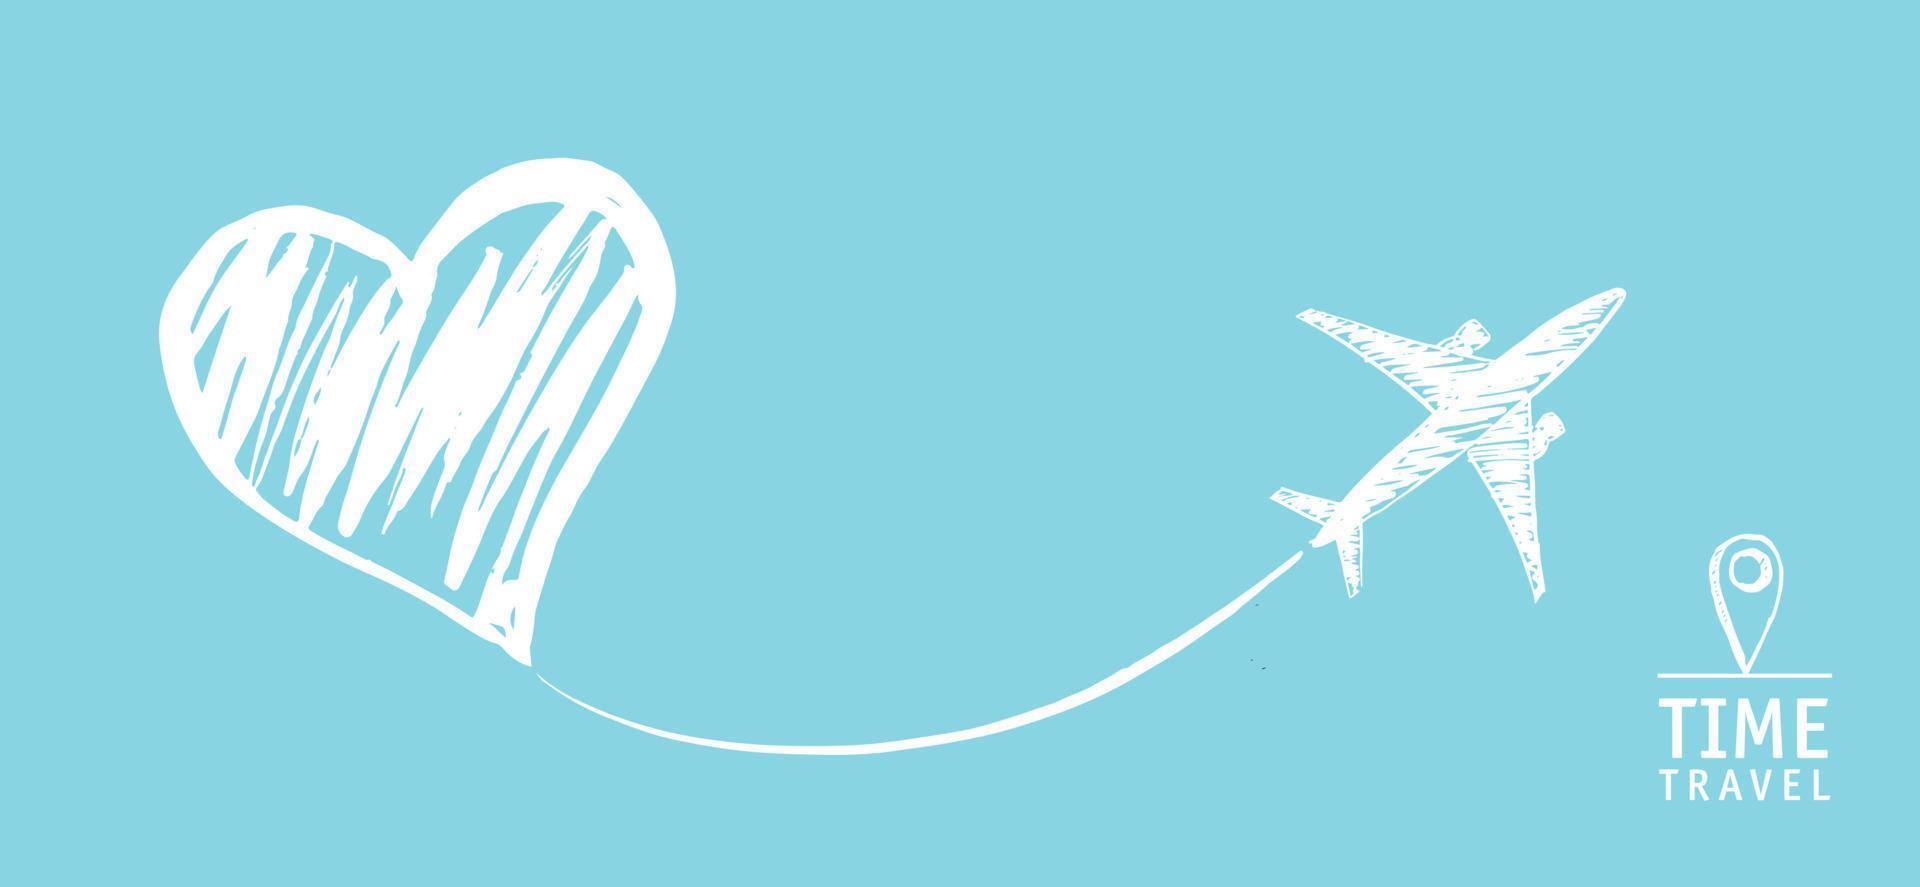 Zeitreise. Das Flugzeug zeichnete ein Herz. handgezeichnete Illustrationen. vektor